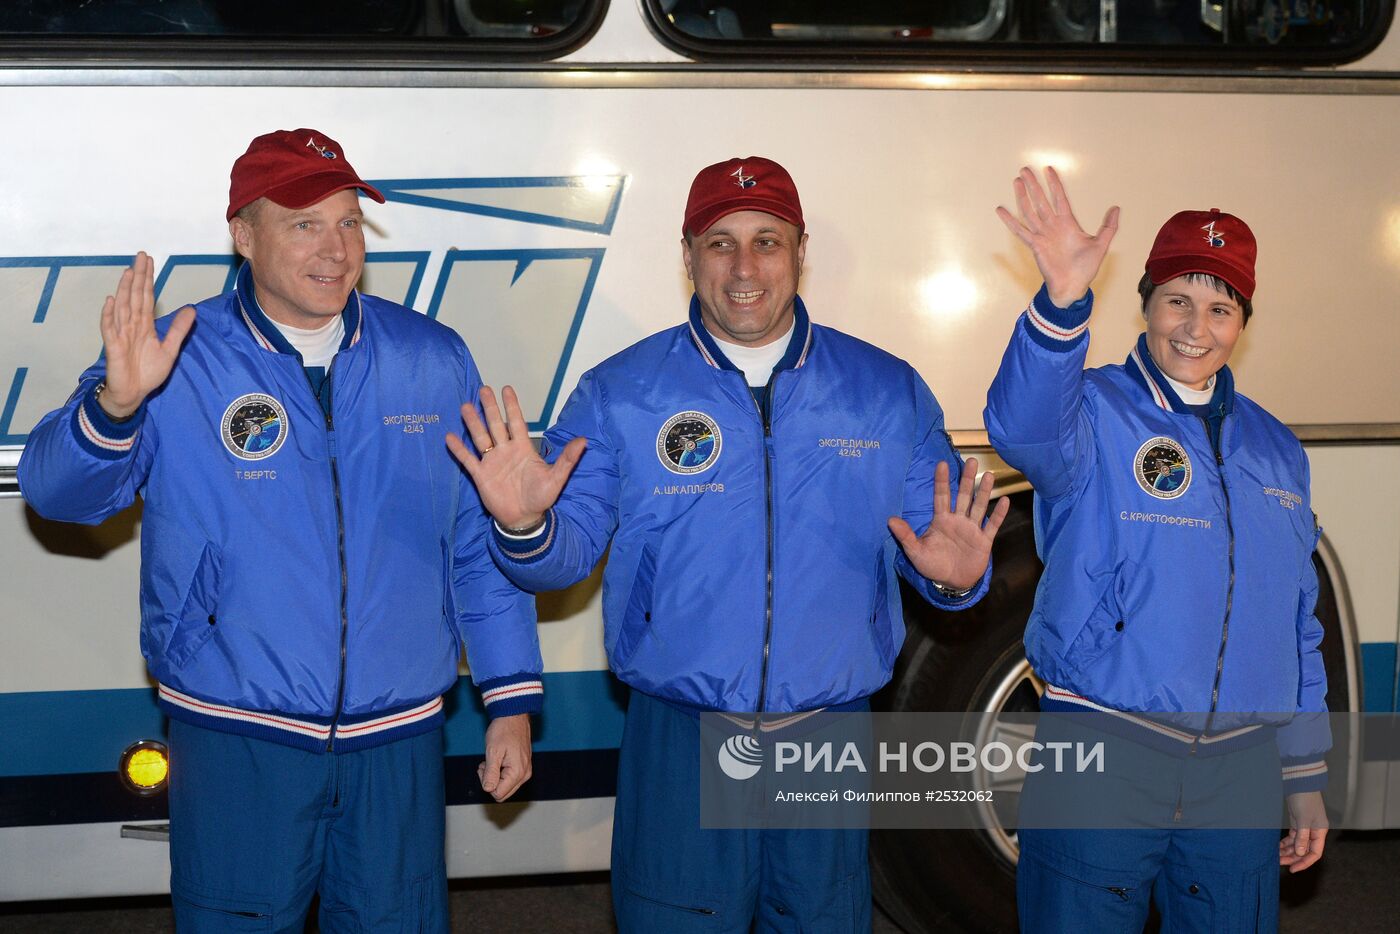 Подготовка к старту основного экипажа 42/43-й экспедиции на МКС